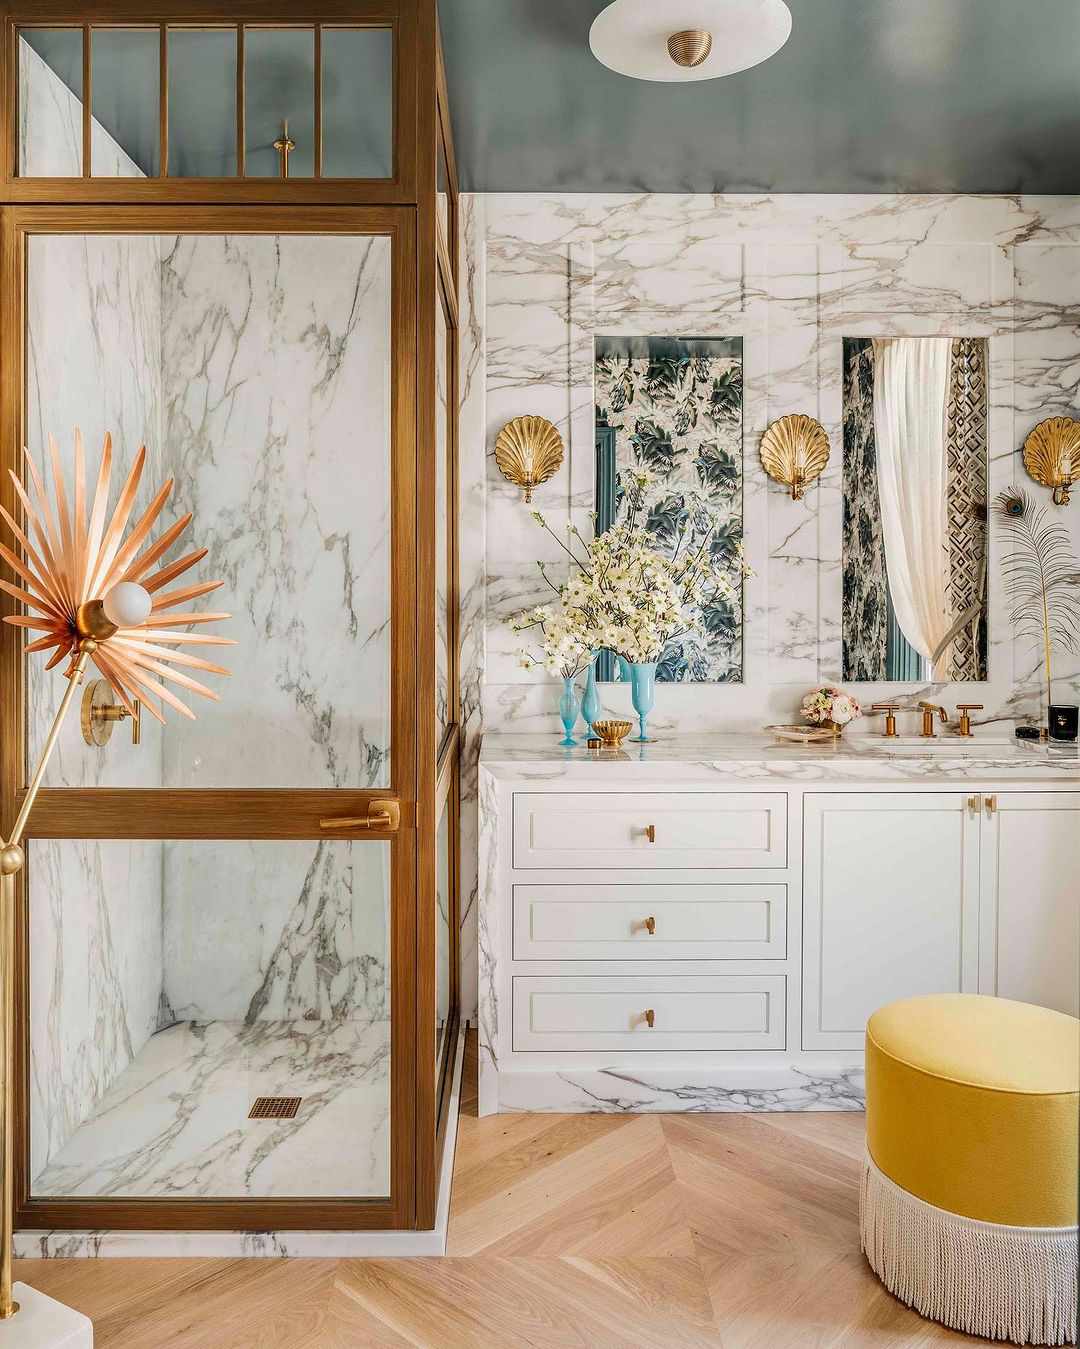 Baño de inspiración parisina con paredes de mármol, techo cerceta y otomana amarilla